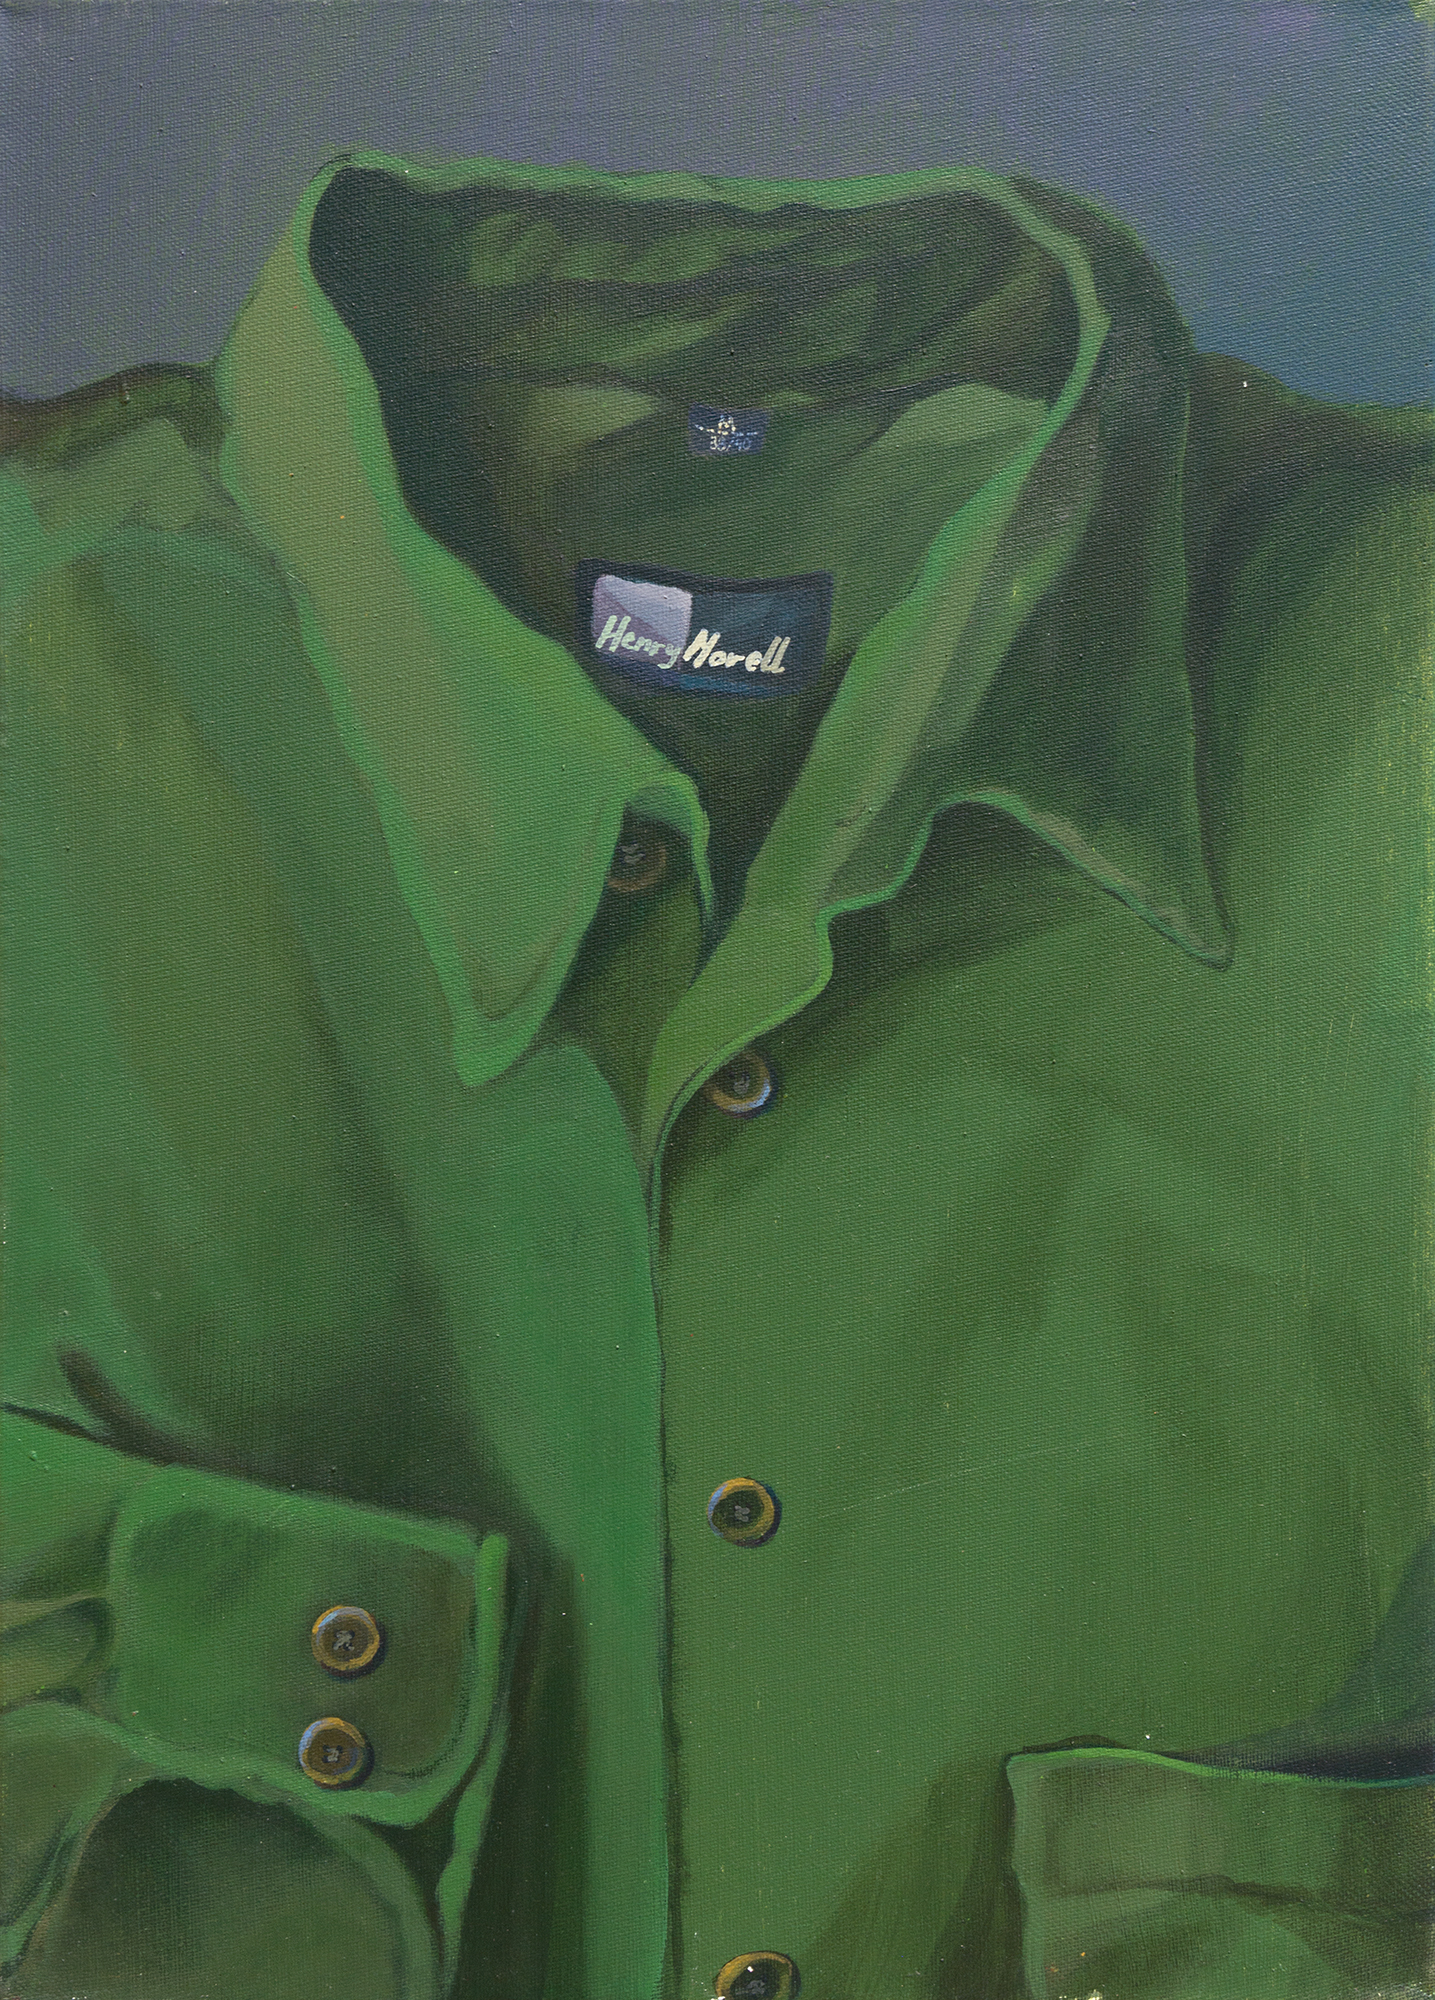 Grzegorz Kozera, Koszula (z cyklu Koszule), 2009, olej na płótnie, 46 x 33 cm